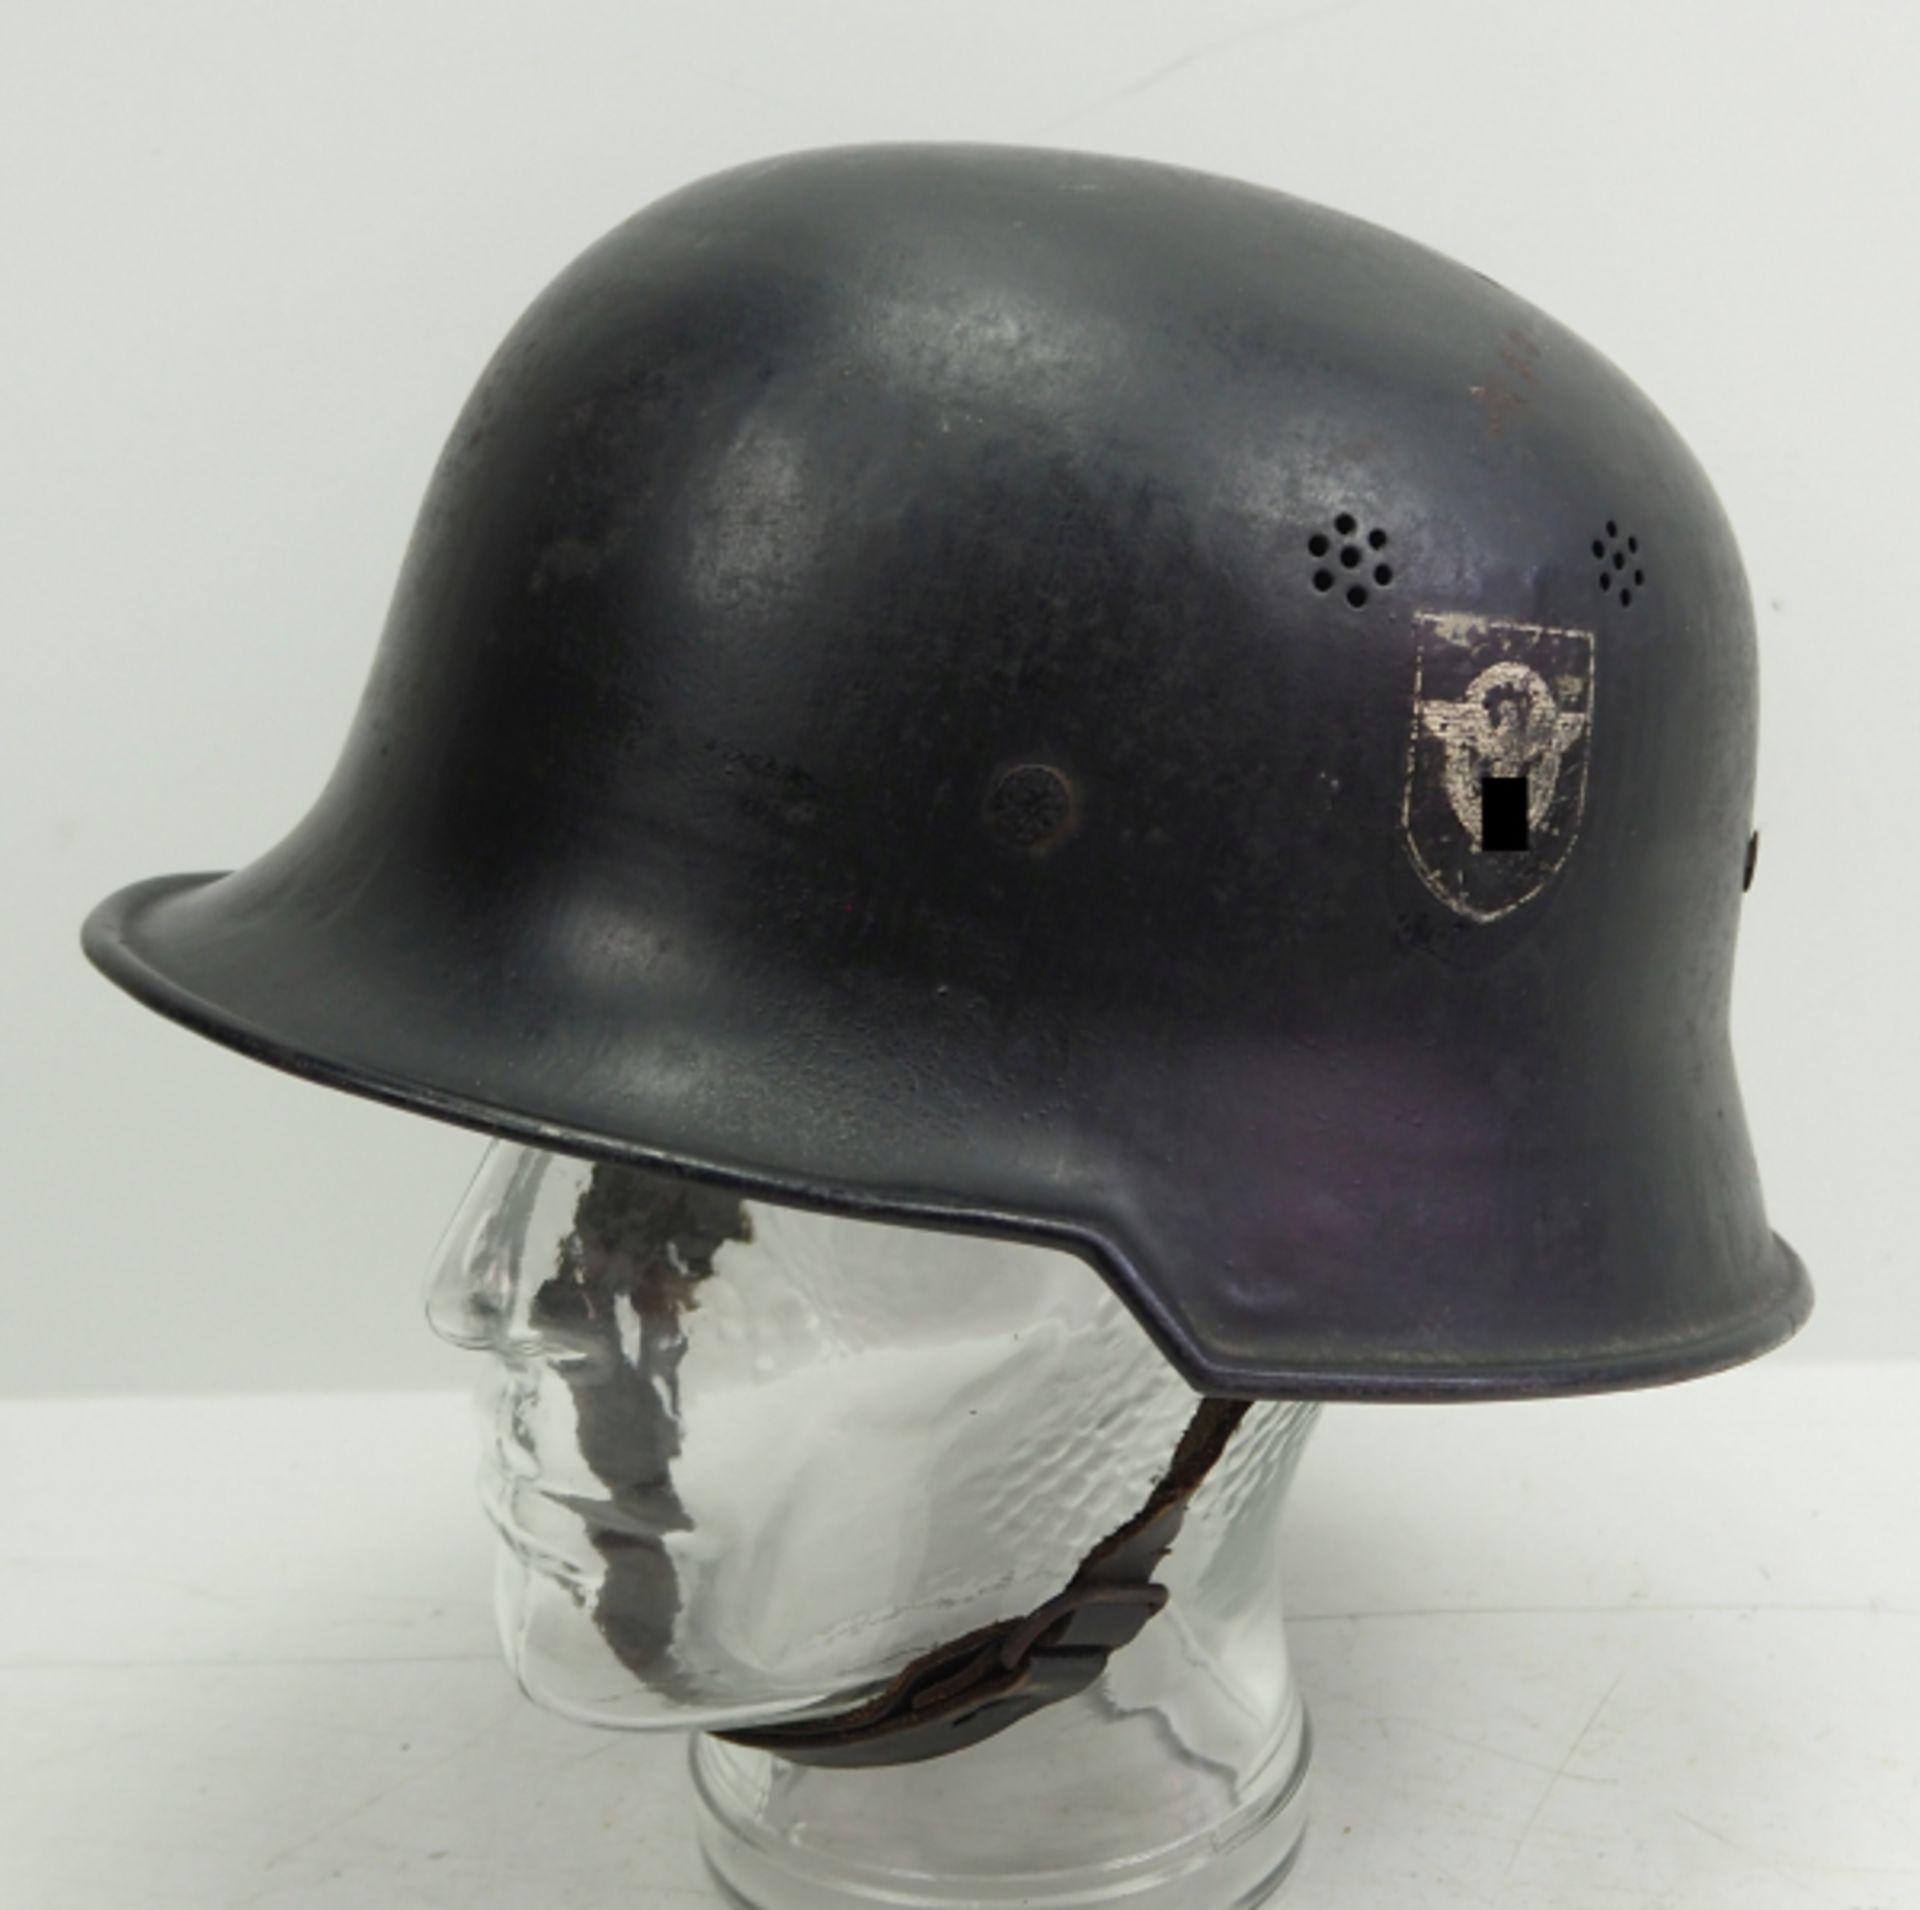 Feuerlöschpolizei: Helm.Schwarz lackierter Helm, das Polizei-Emblem zu ca. 75% erhalten, das